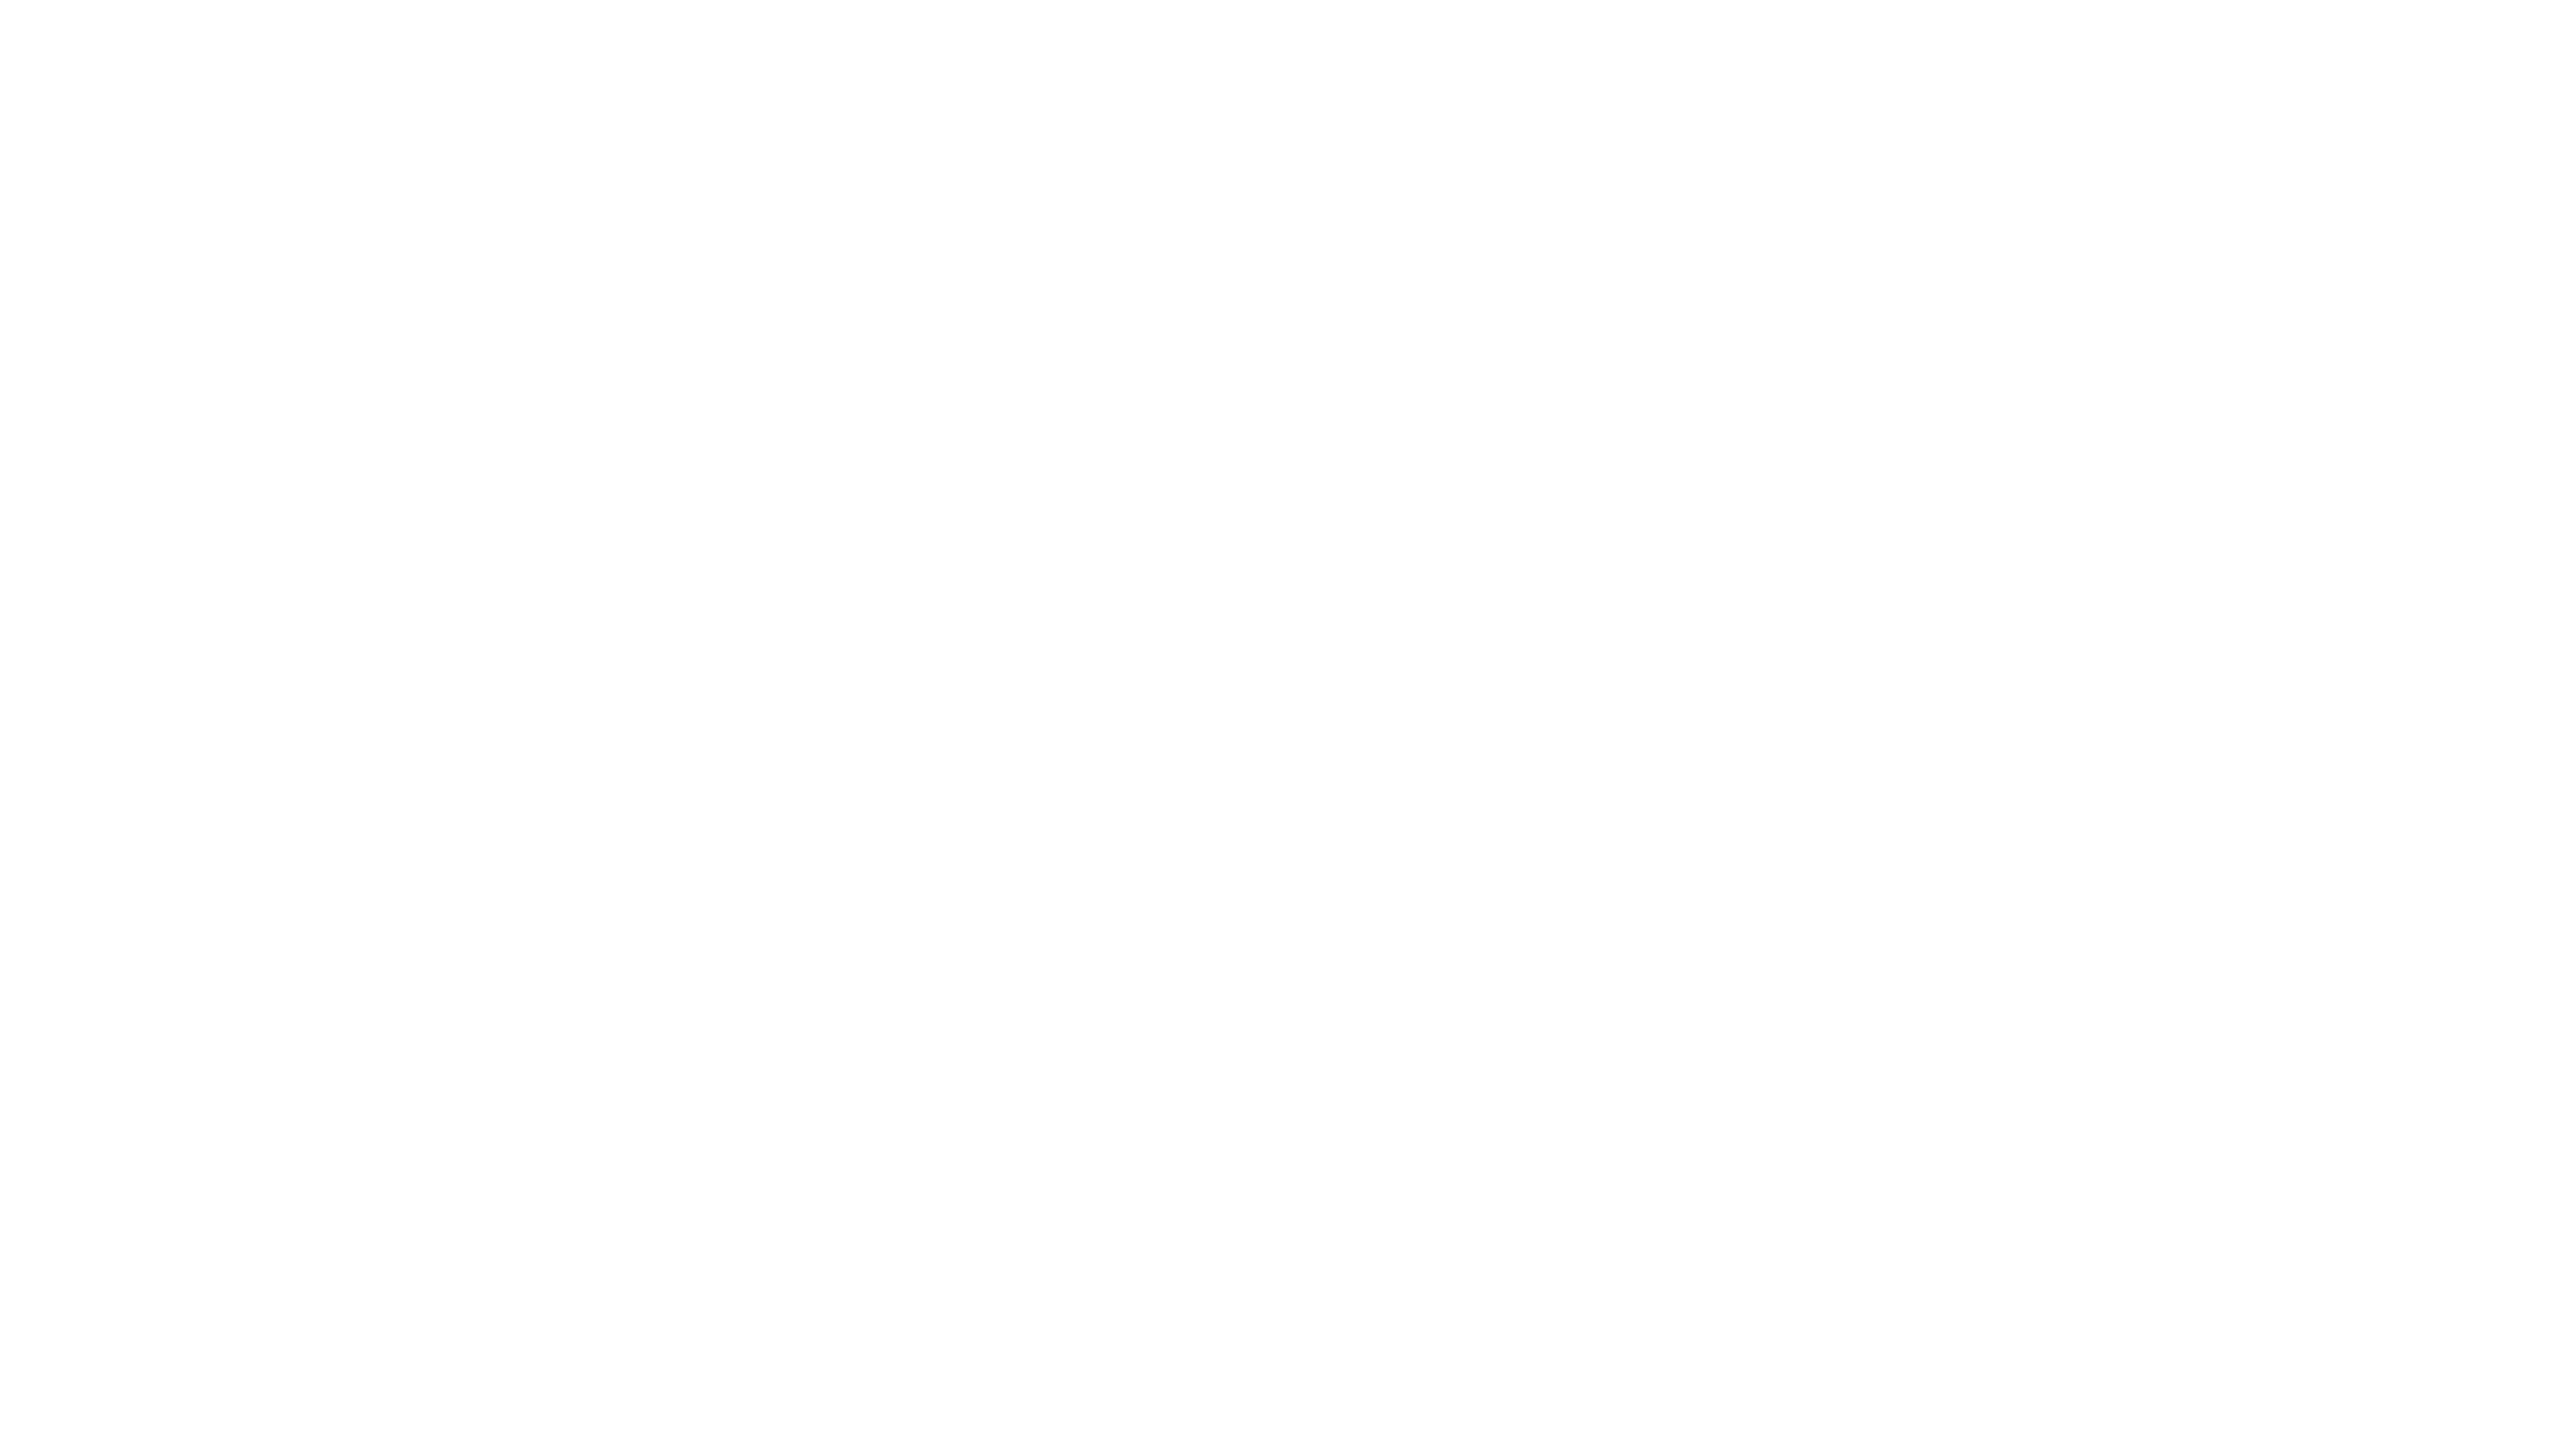 Zengo logo